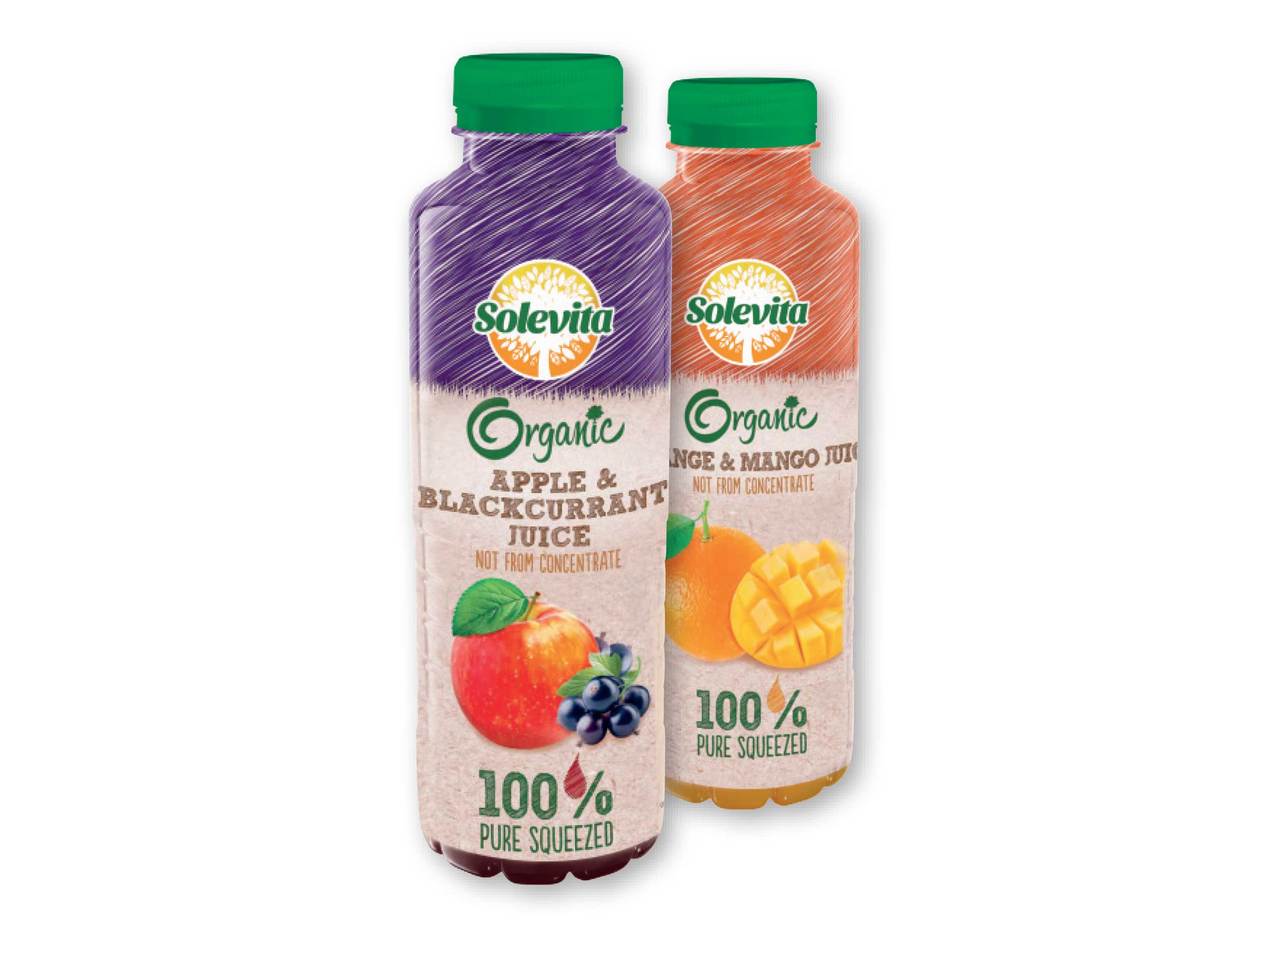 SOLEVITA Organic Juice